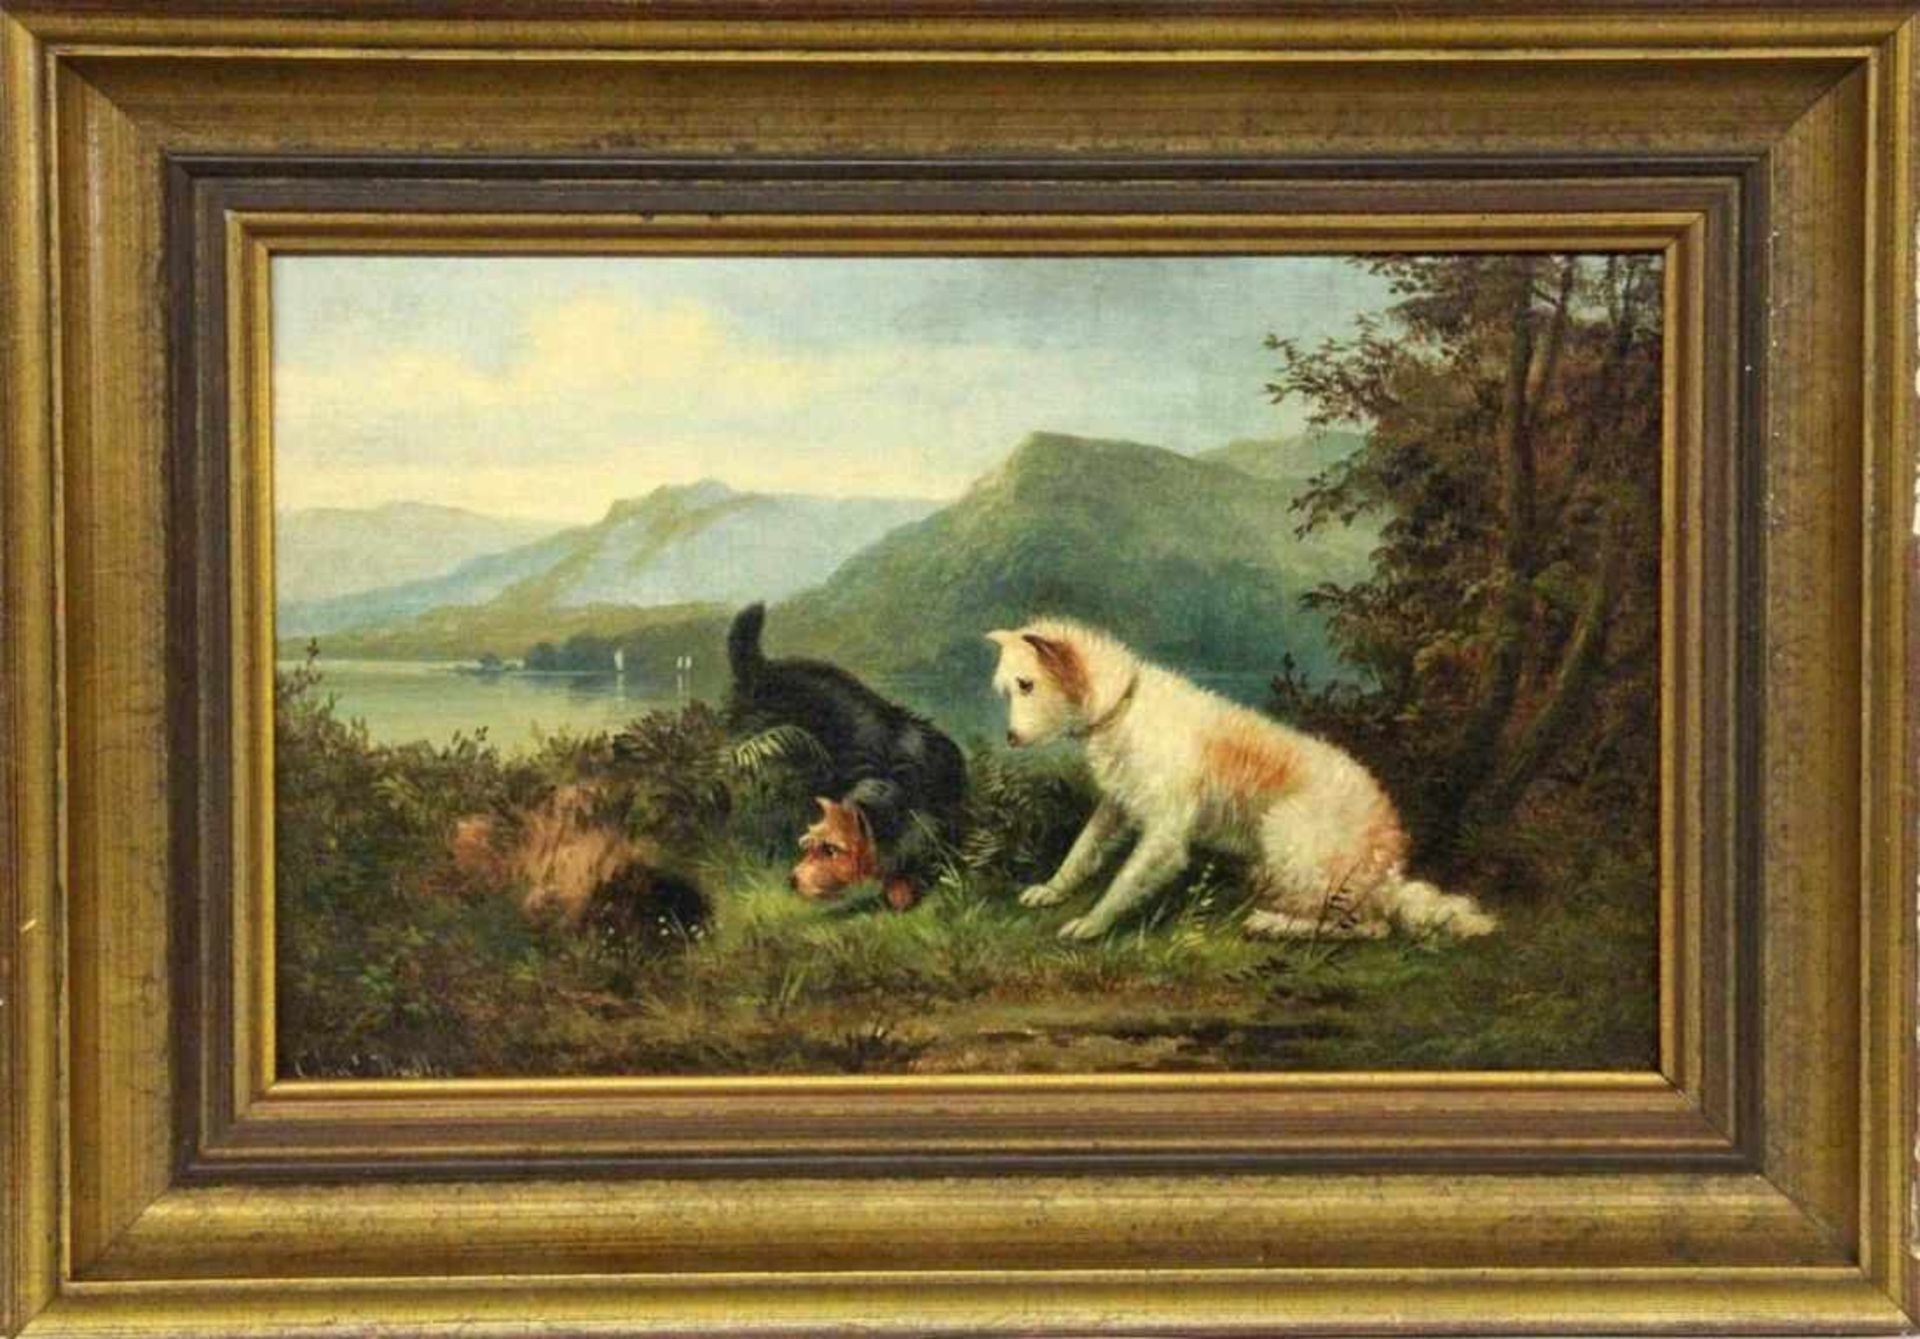 DUDLEY, CHARLES Englischer Tiermaler um 1900 2 Terrier vor einem Fuchsbau. Öl/Lwd., signiert.